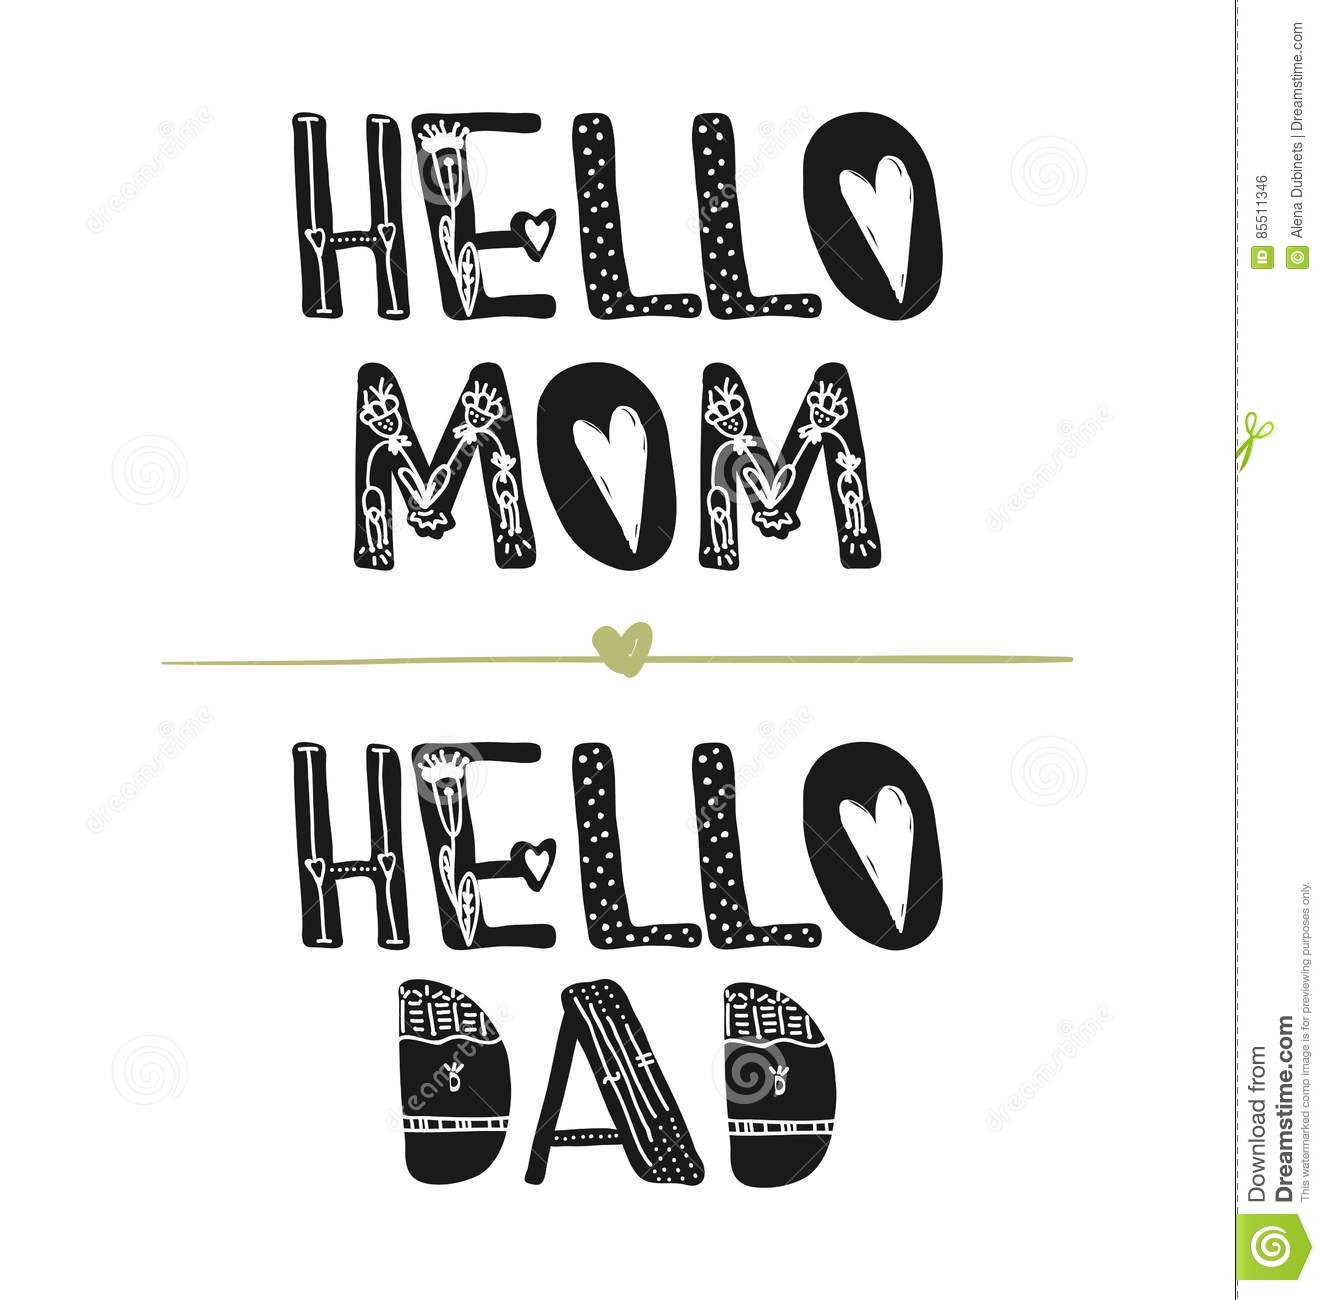 Hello daddy hello mom cherry. Hi dad. Hi mom. Hi mom 1970. Hello dad.